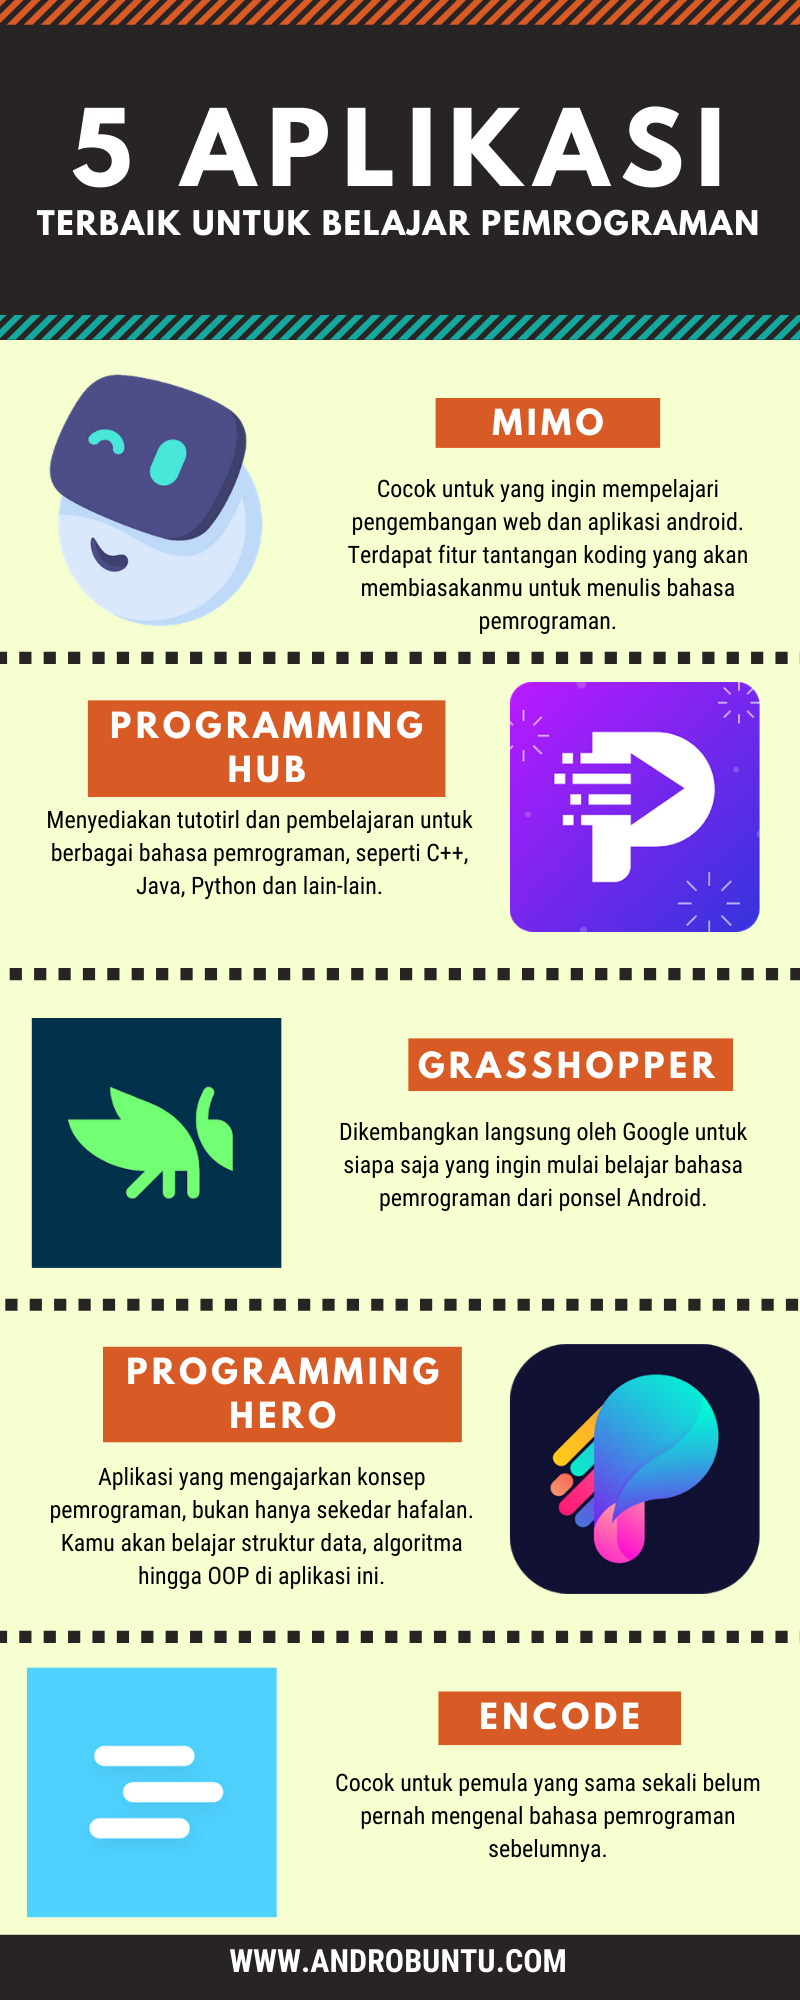 5 aplikasi belajar pemrograman terbaik by Androbuntu